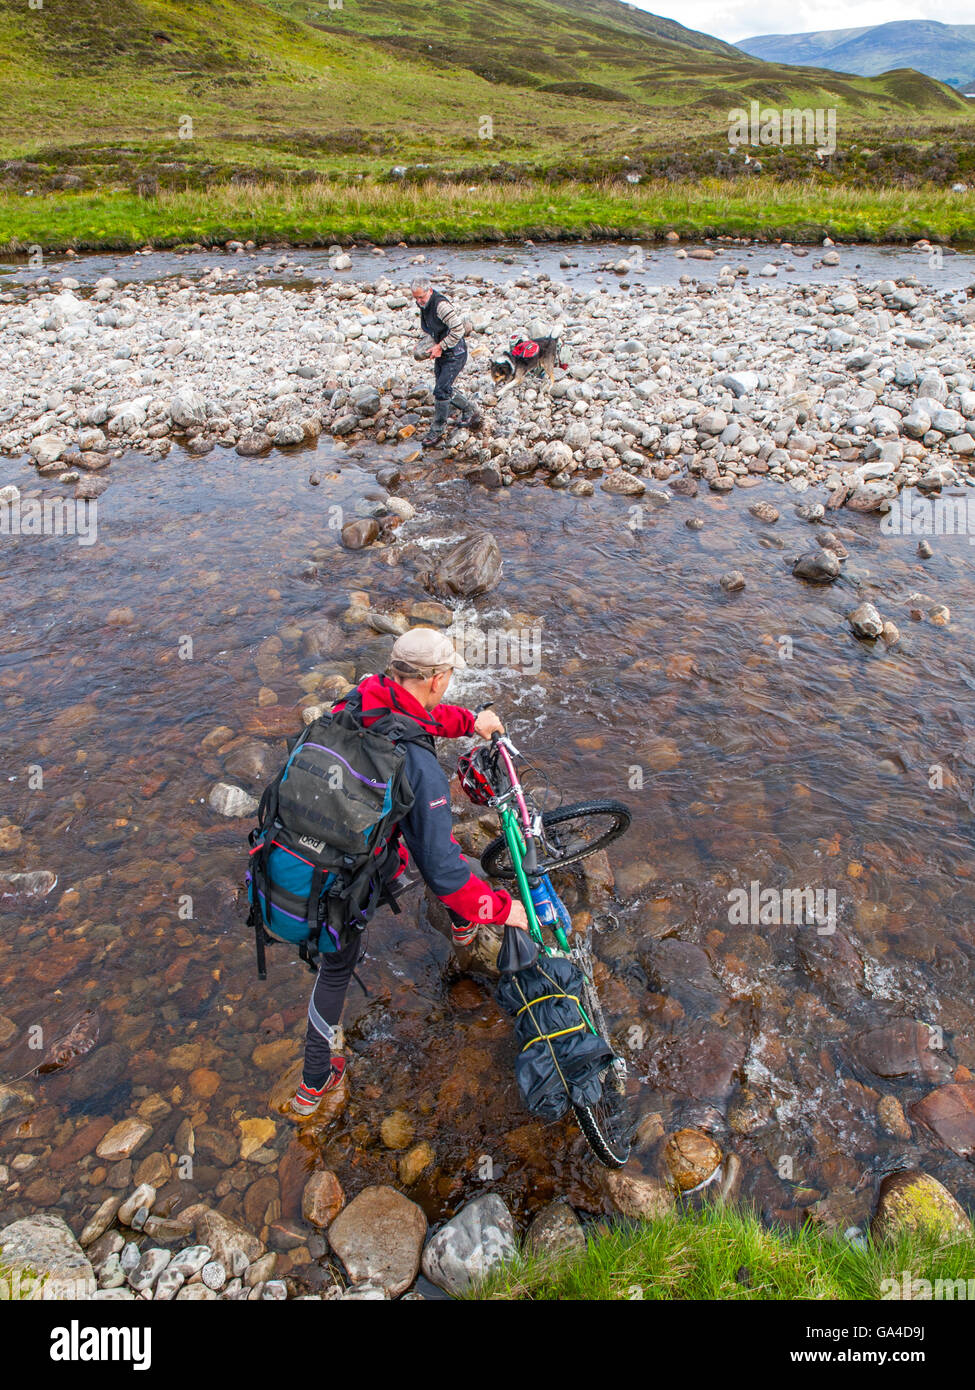 Une rivière à gué cycliste dans les Cairngorms, l'Écosse, tandis que sur un vélo-emballage expedition Banque D'Images